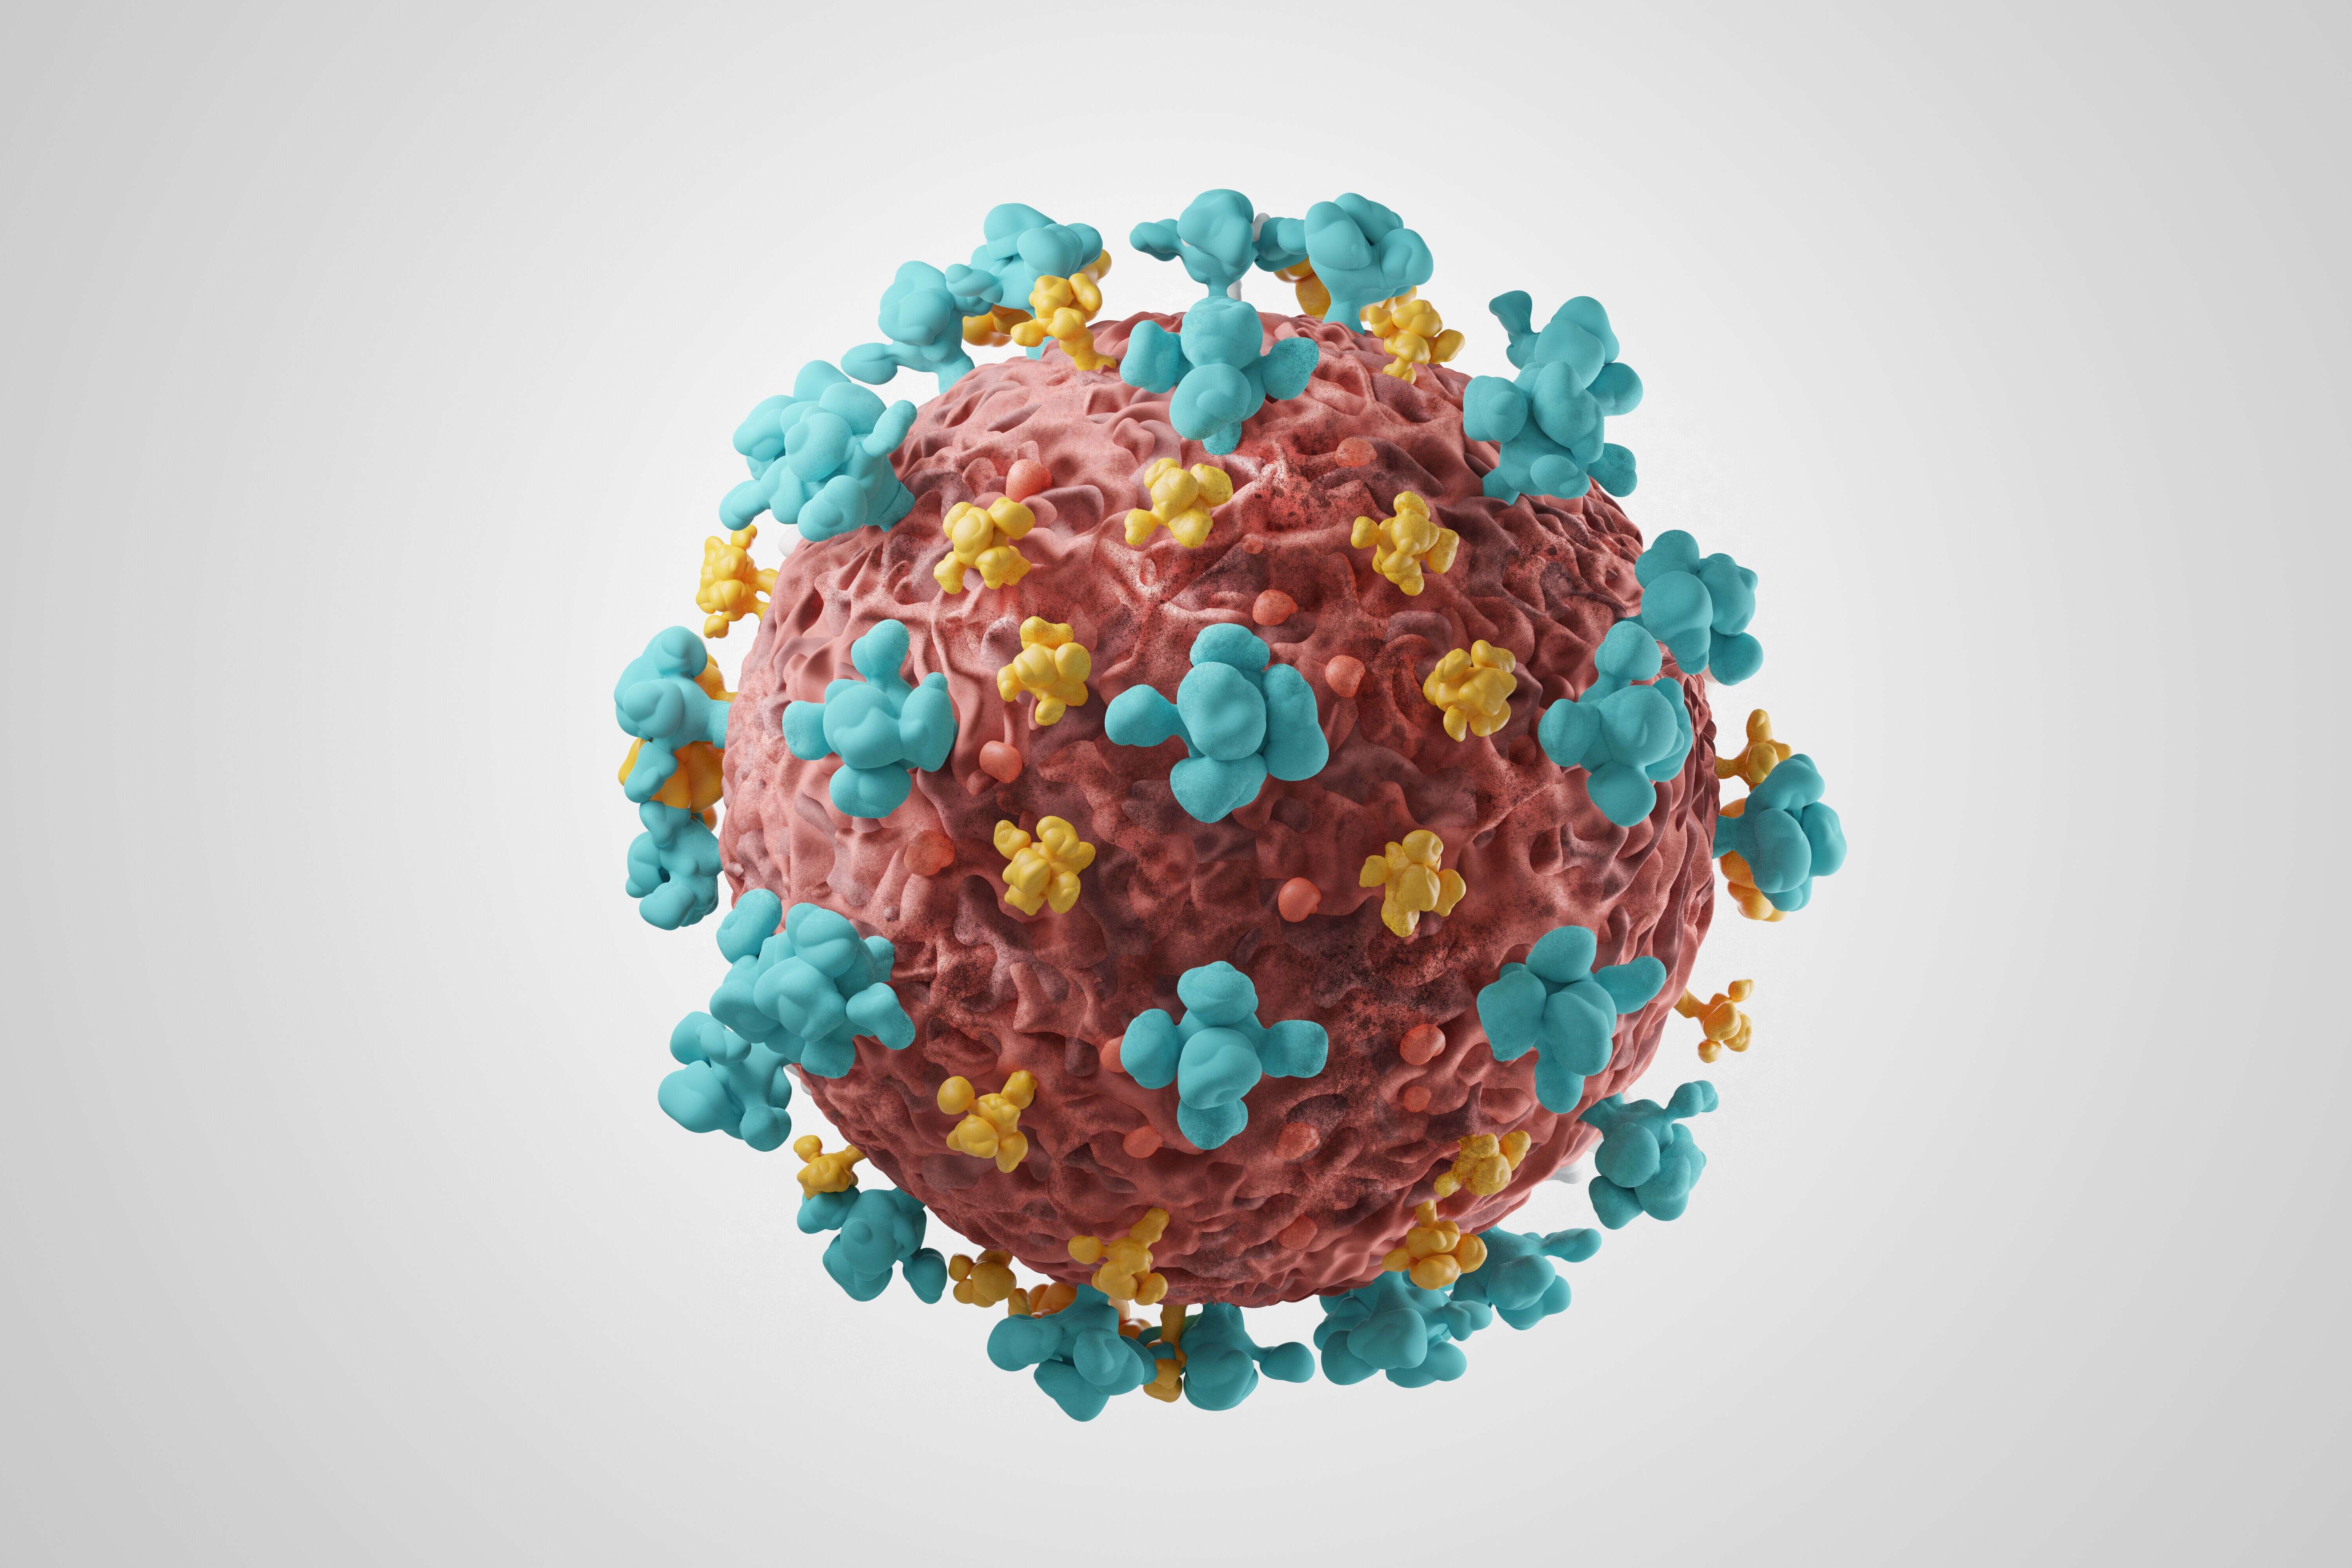 Deux variants du coronavirus avec des mutations nombreuses sont apparus quasi simultanément